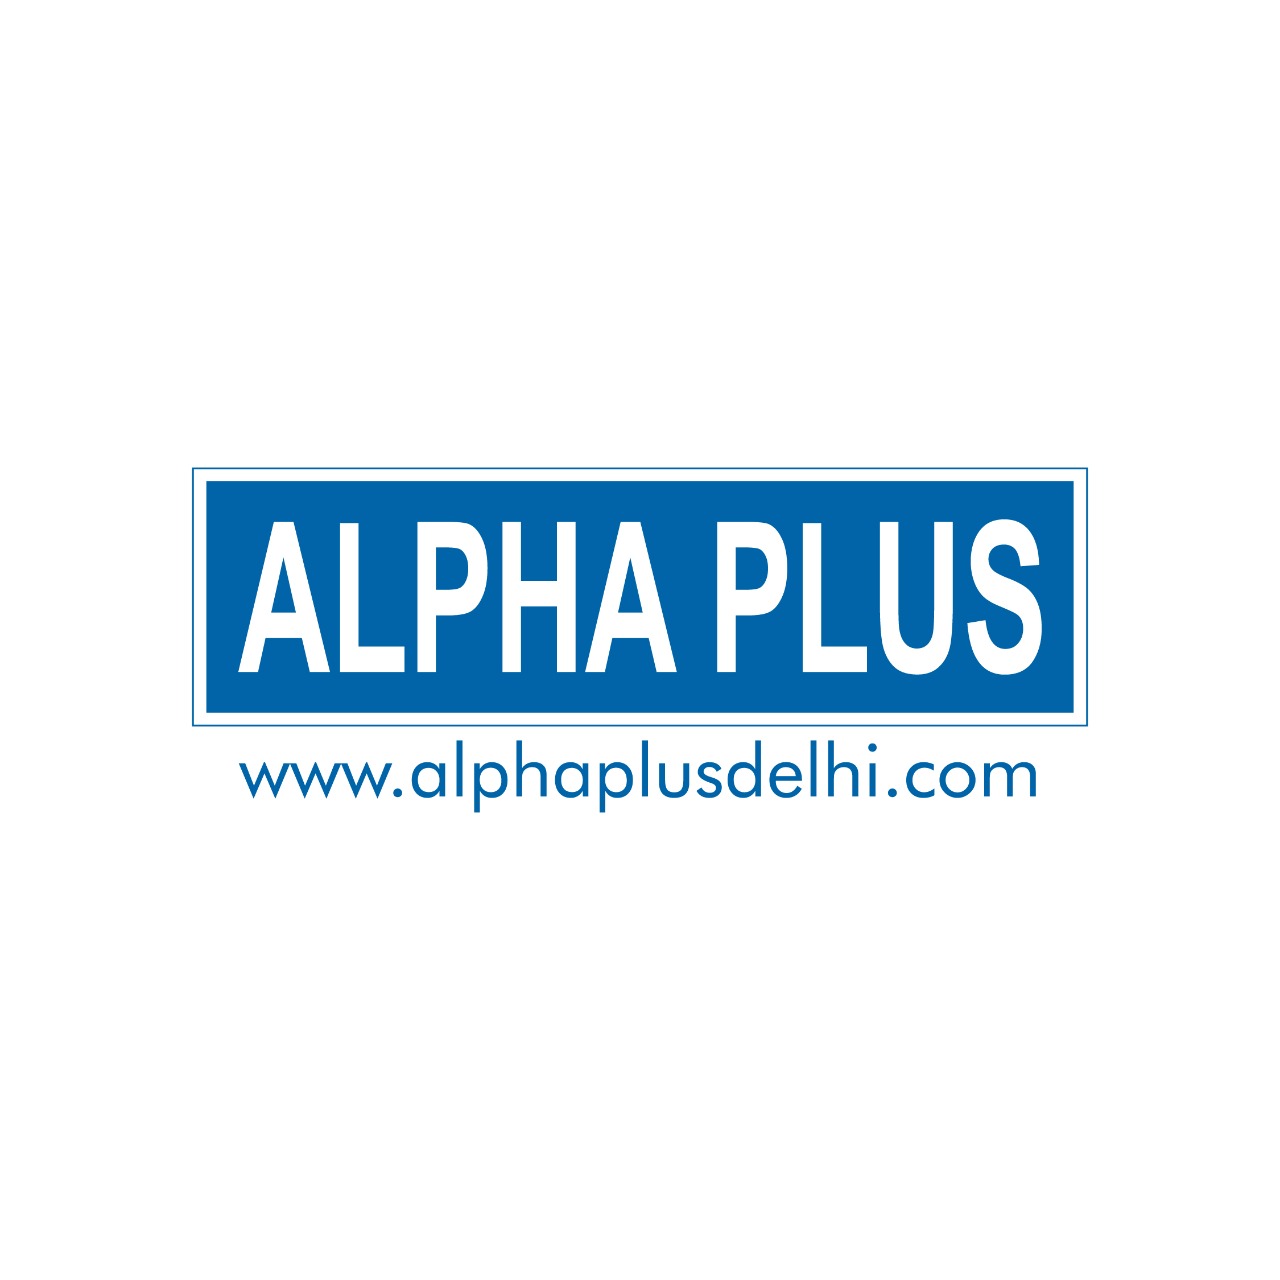 Alpha Plus|Coaching Institute|Education